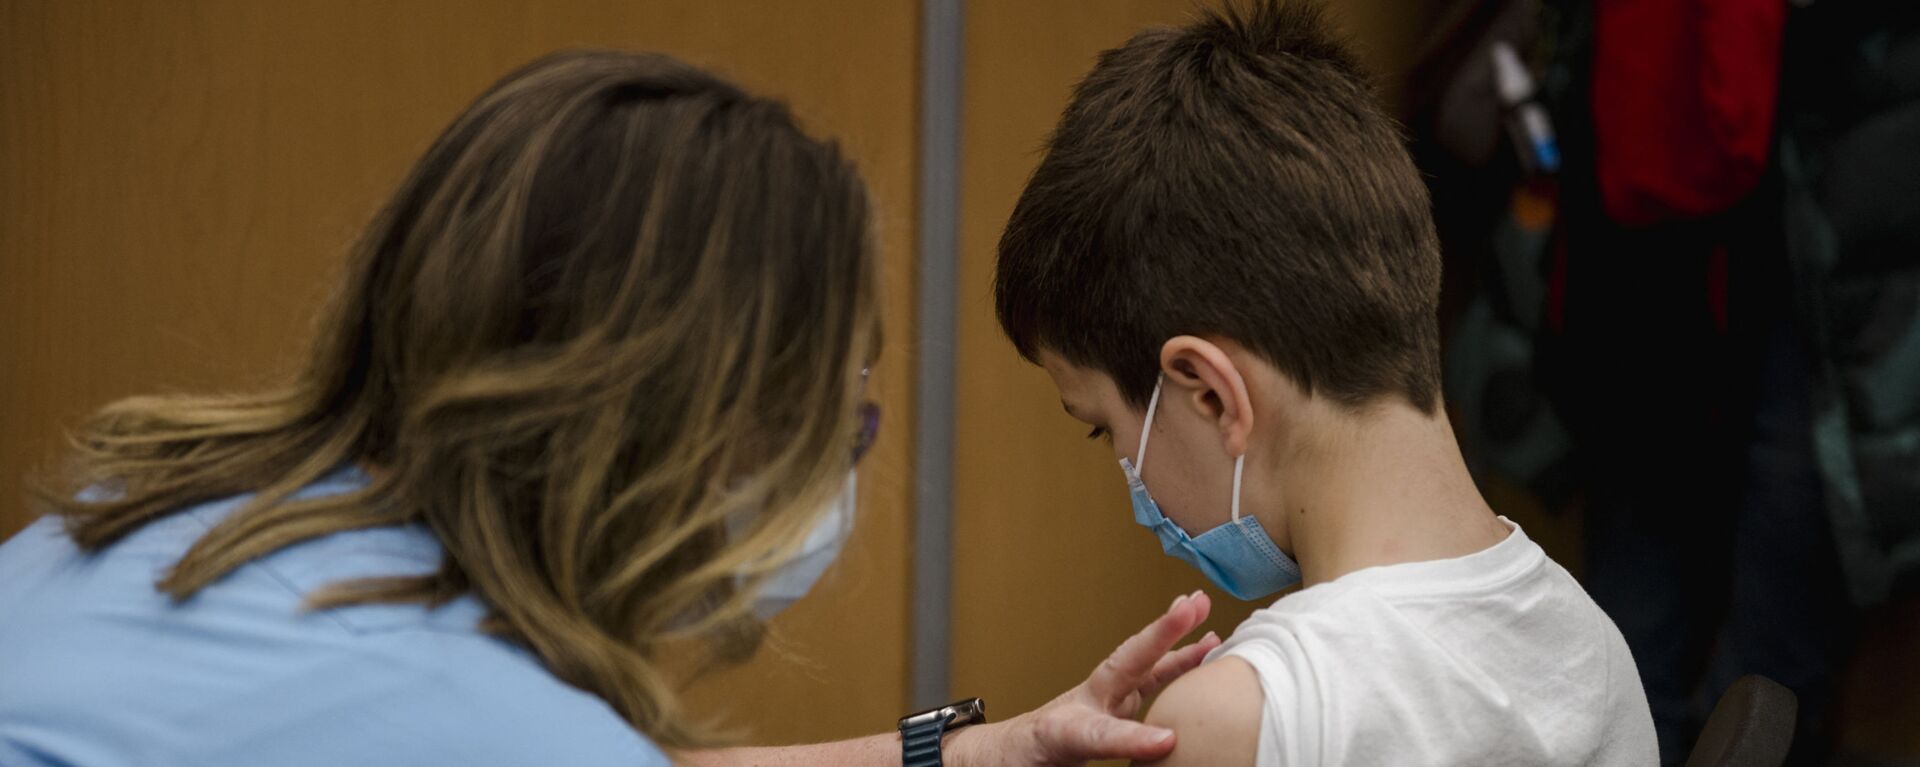 Ребенок получает вакцину Pfizer-BioNTech Covid-19 для детей в Монреале, Квебе - Sputnik Latvija, 1920, 16.12.2021